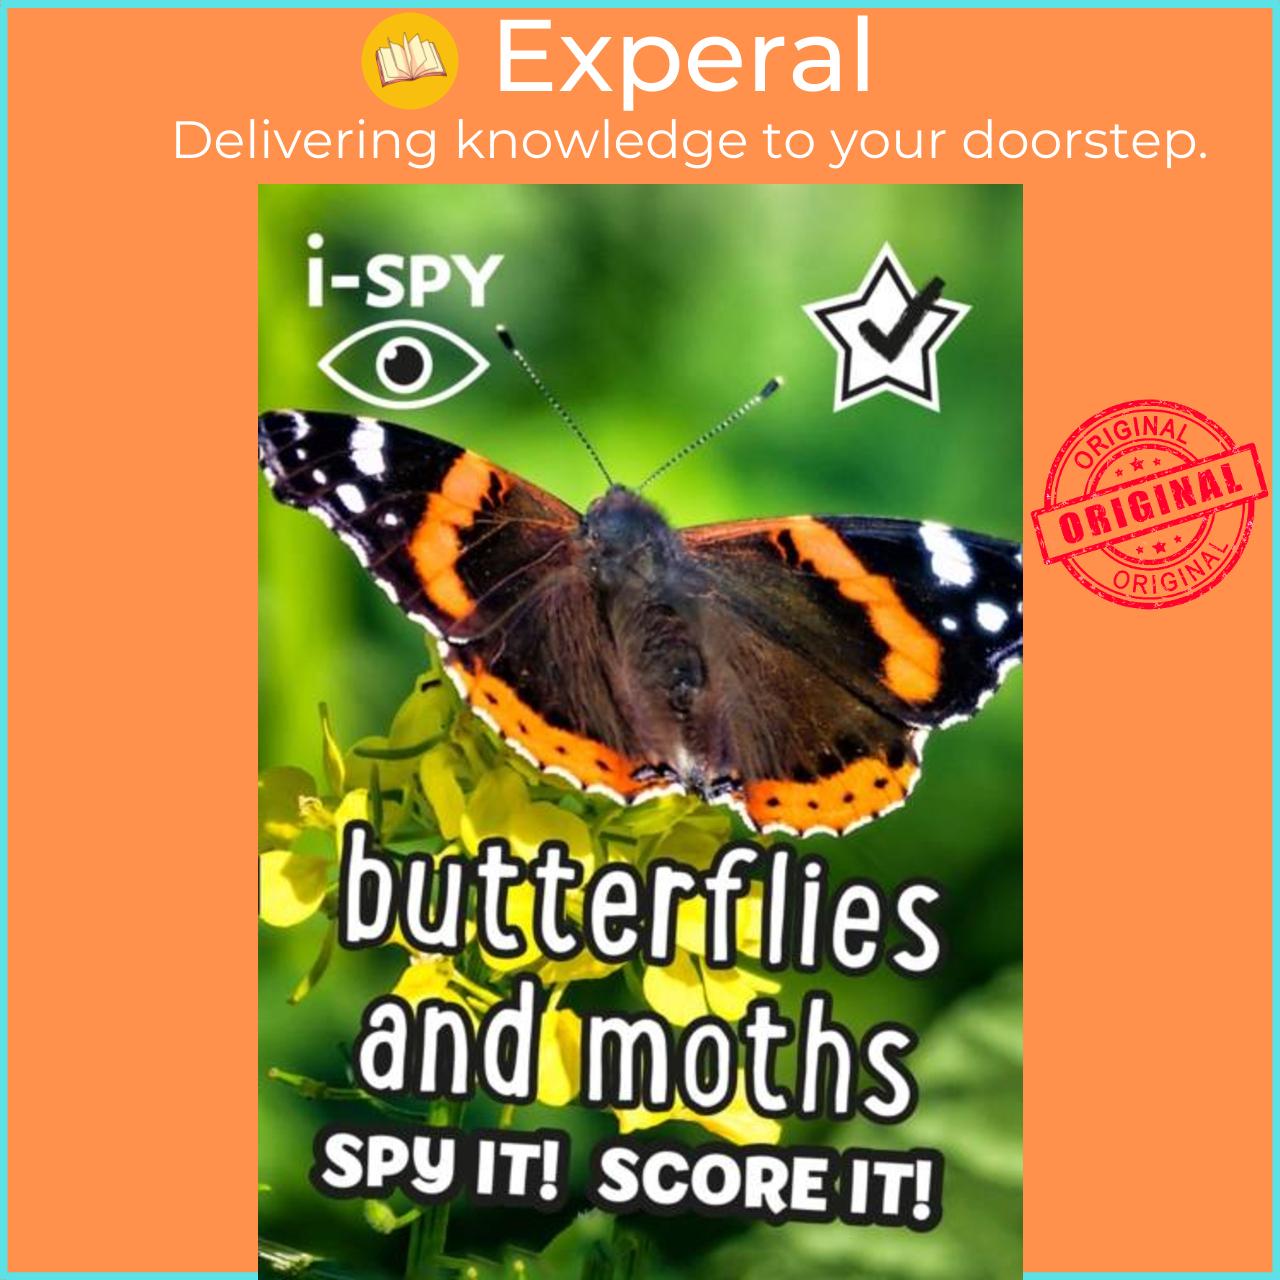 Sách - i-SPY Butterflies and Moths - Spy it! Score it! by i-SPY (UK edition, paperback)